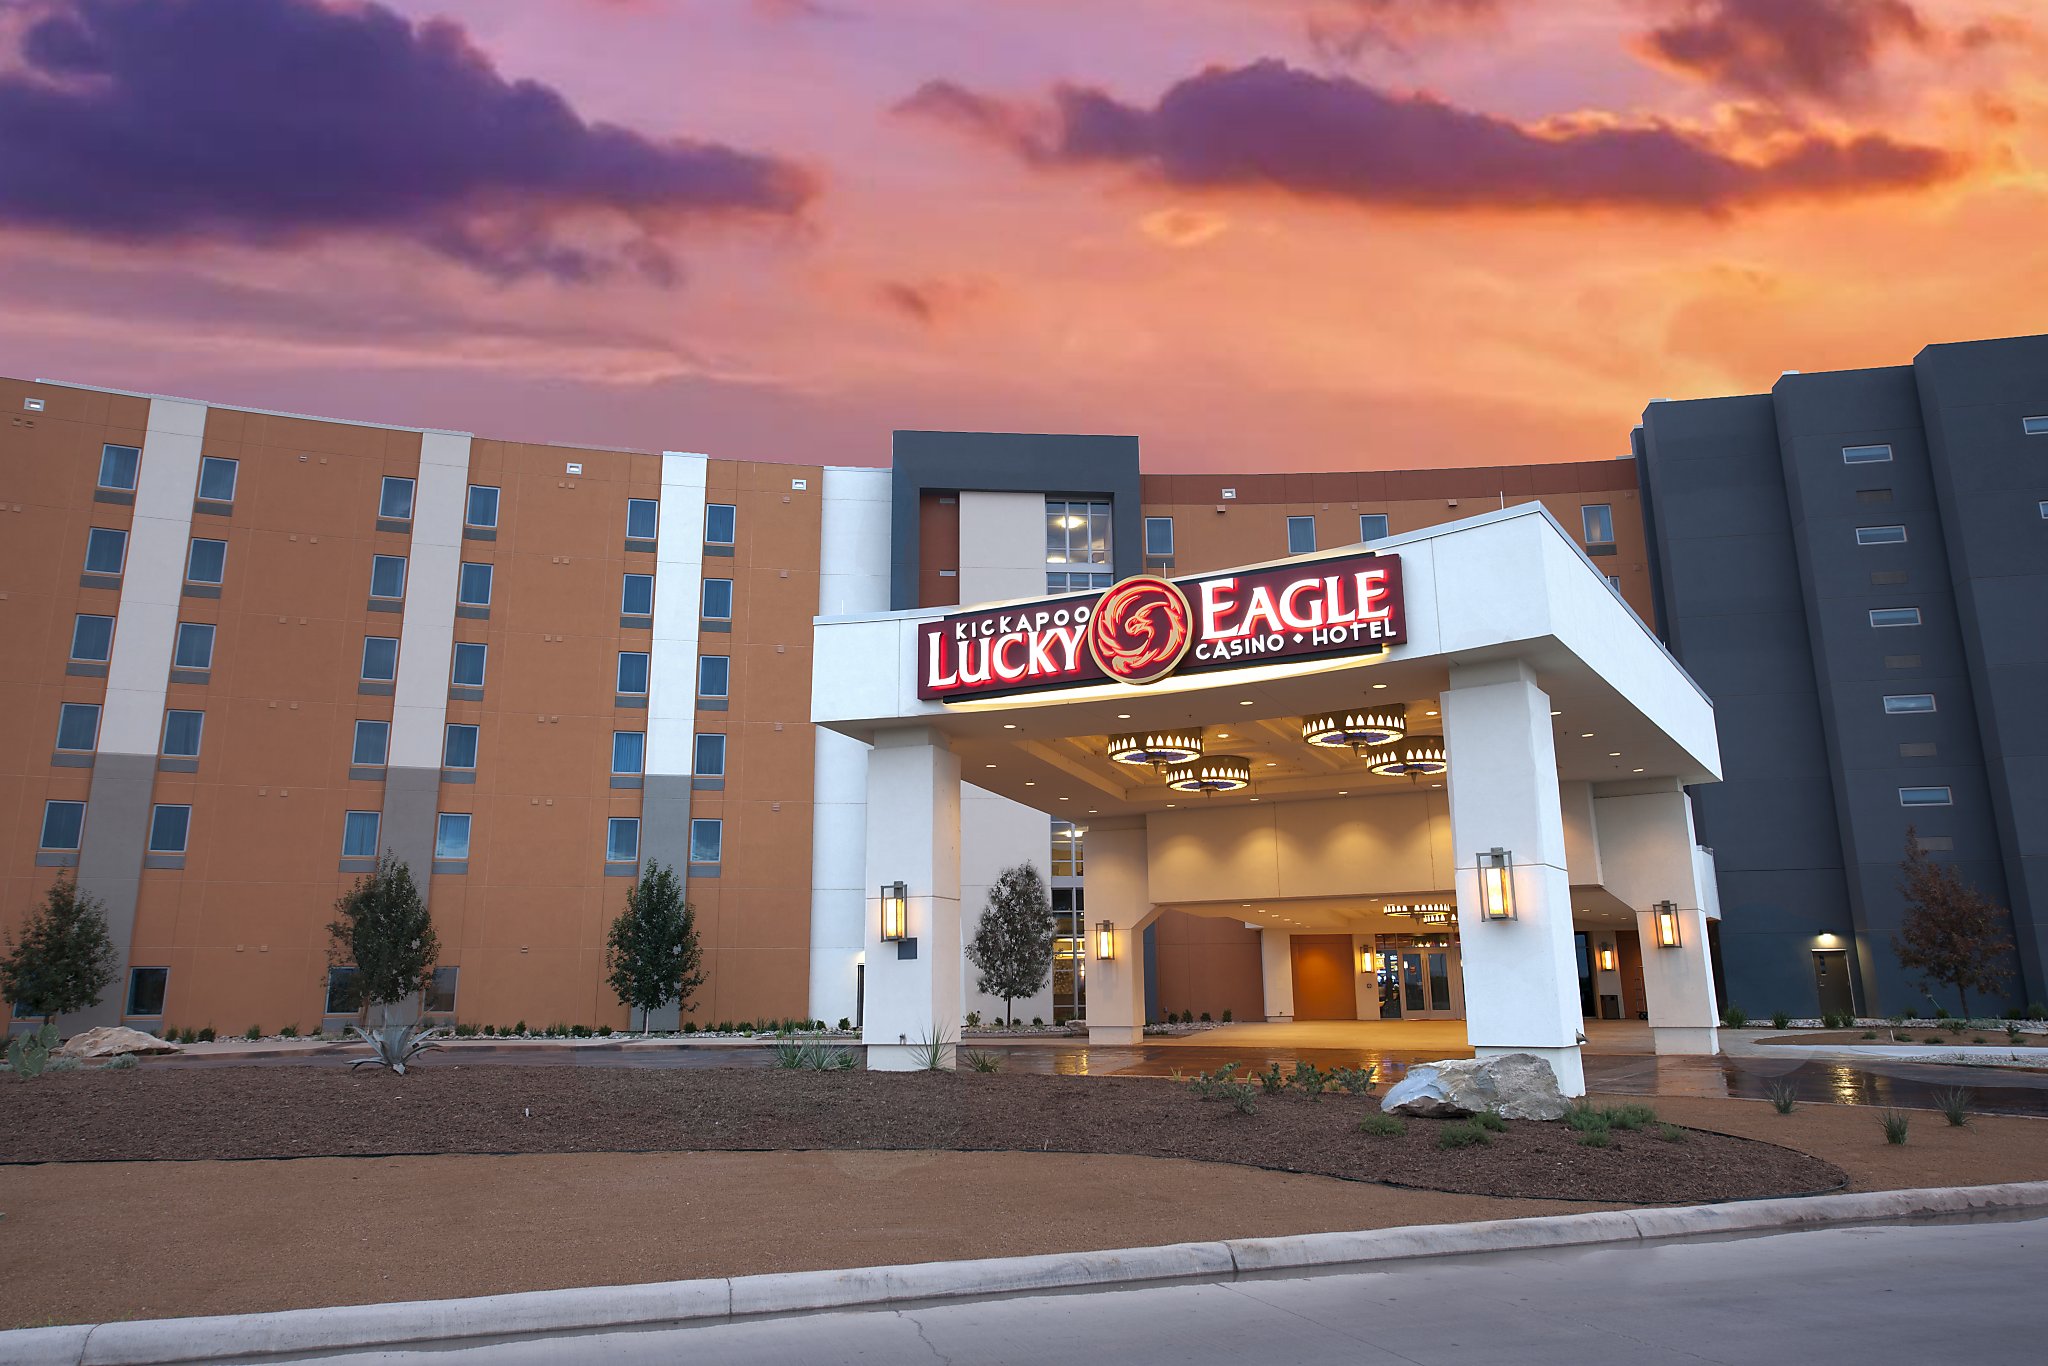 kickapoo eagle pass casino hotel